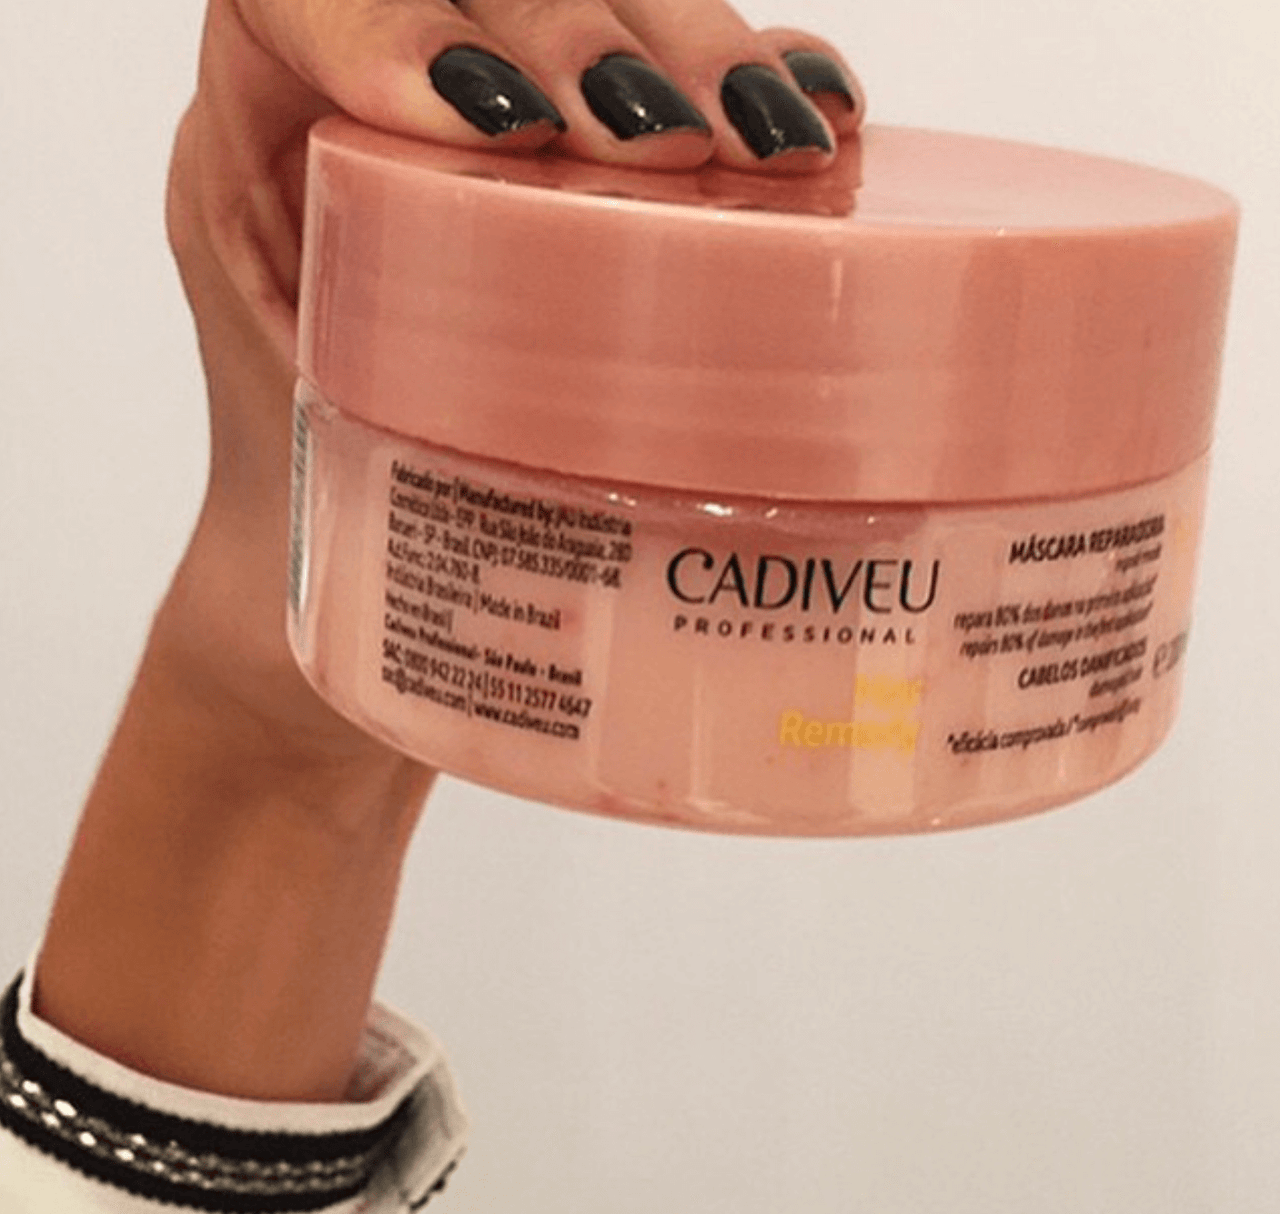 CADIVEU - Hair Remedy, Mask 200g